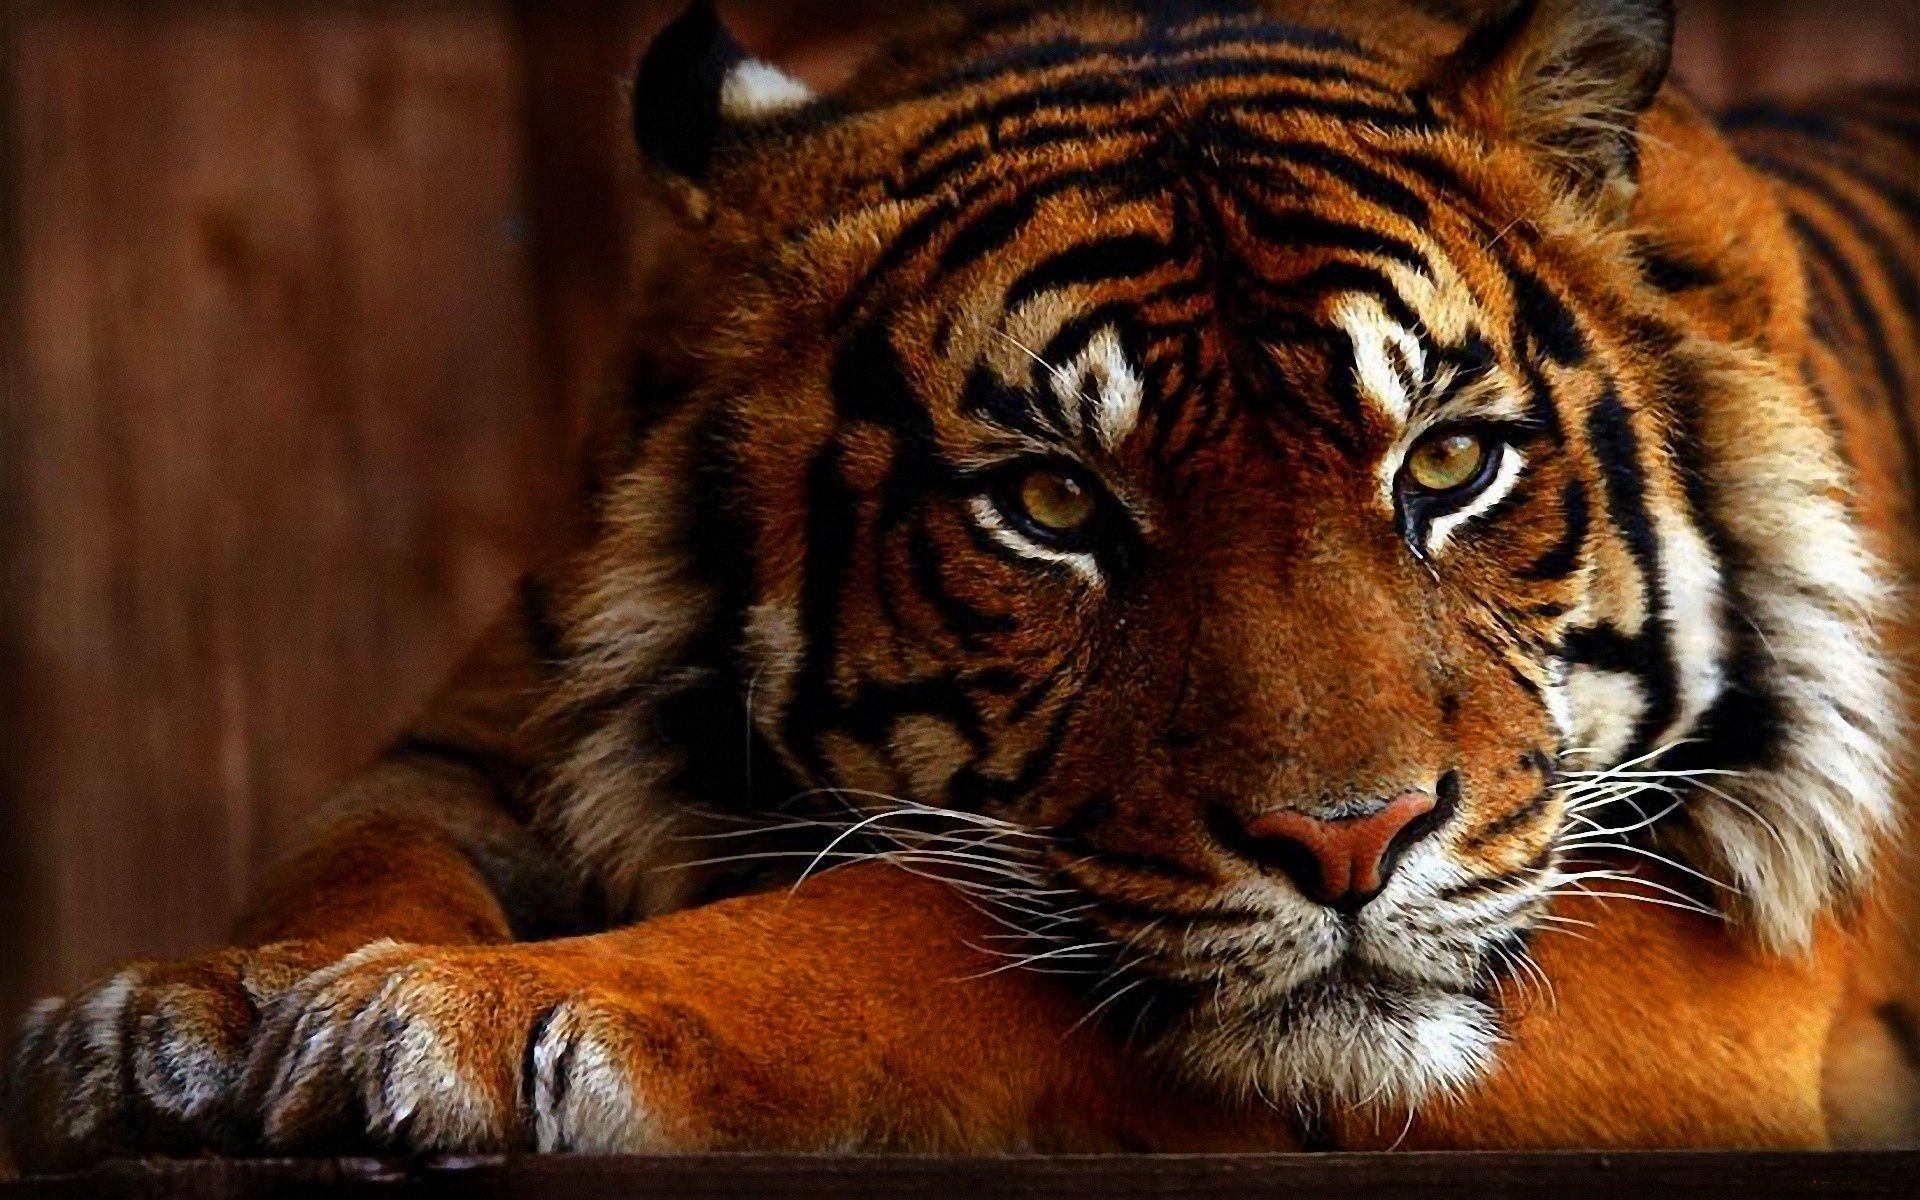 Скачать обои бесплатно Животные, Тигр картинка на рабочий стол ПК